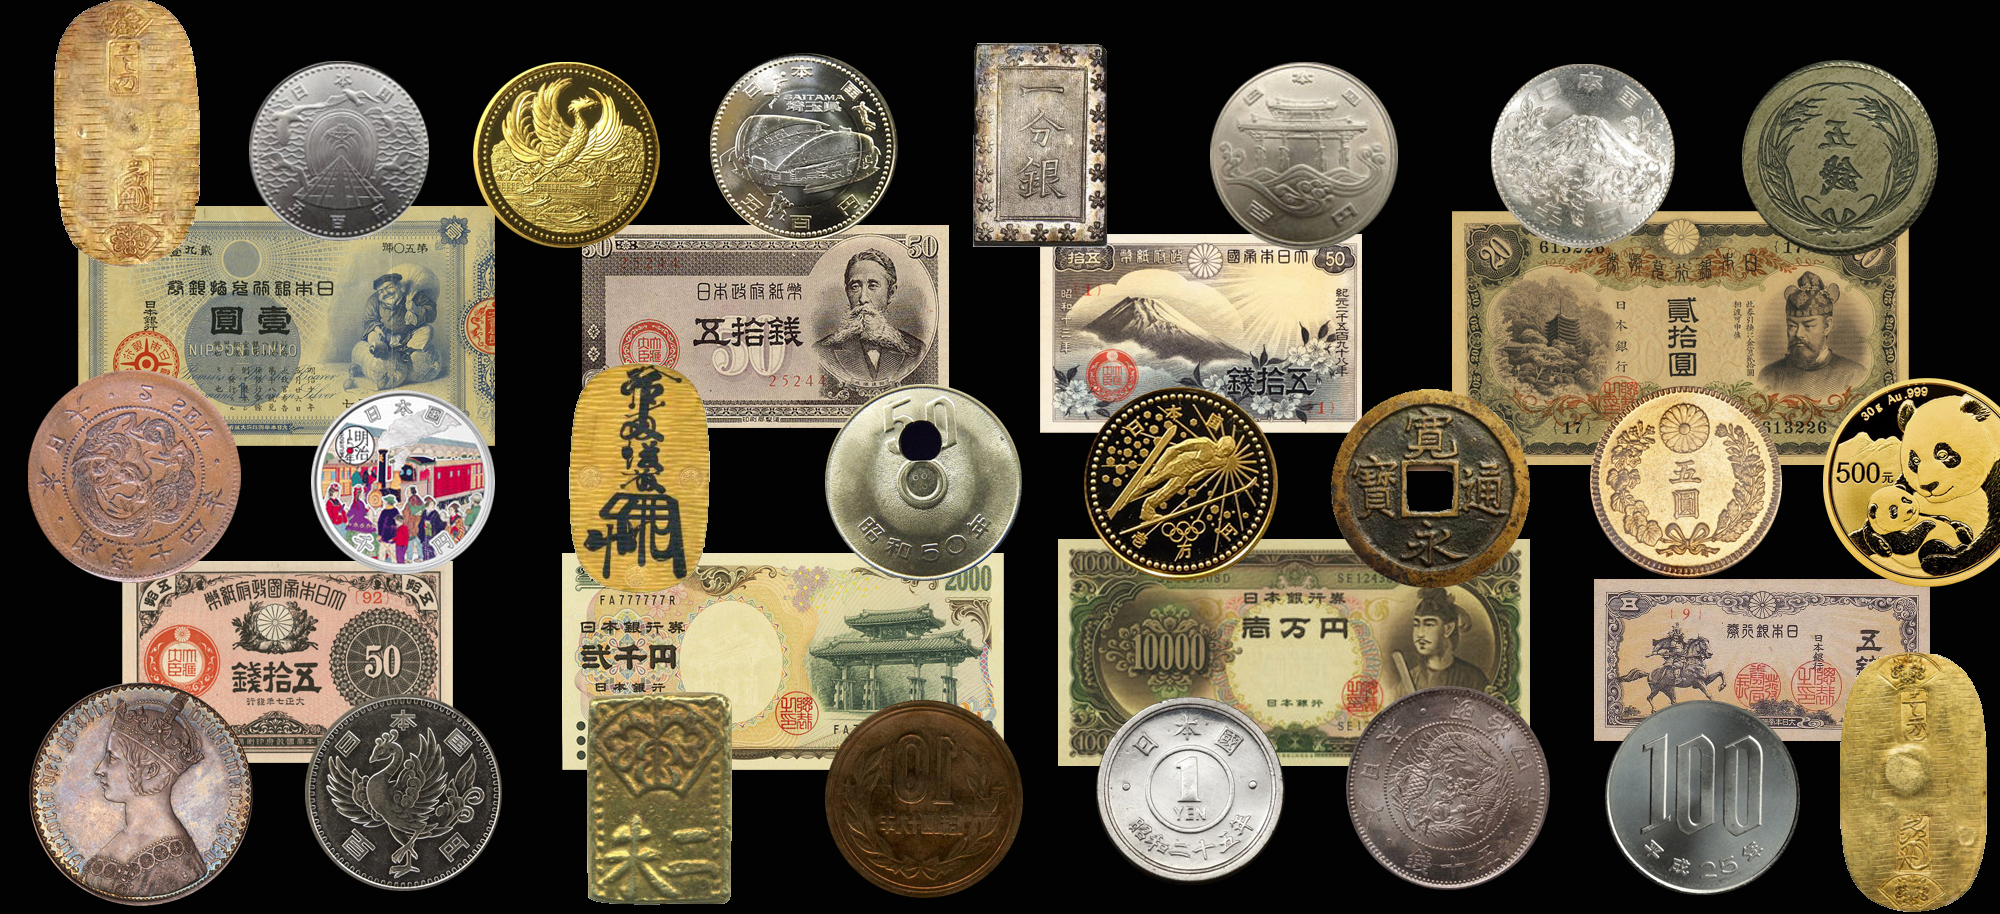 古紙幣の買取業者ランキング2020|記念硬貨やコインを高く売る方法